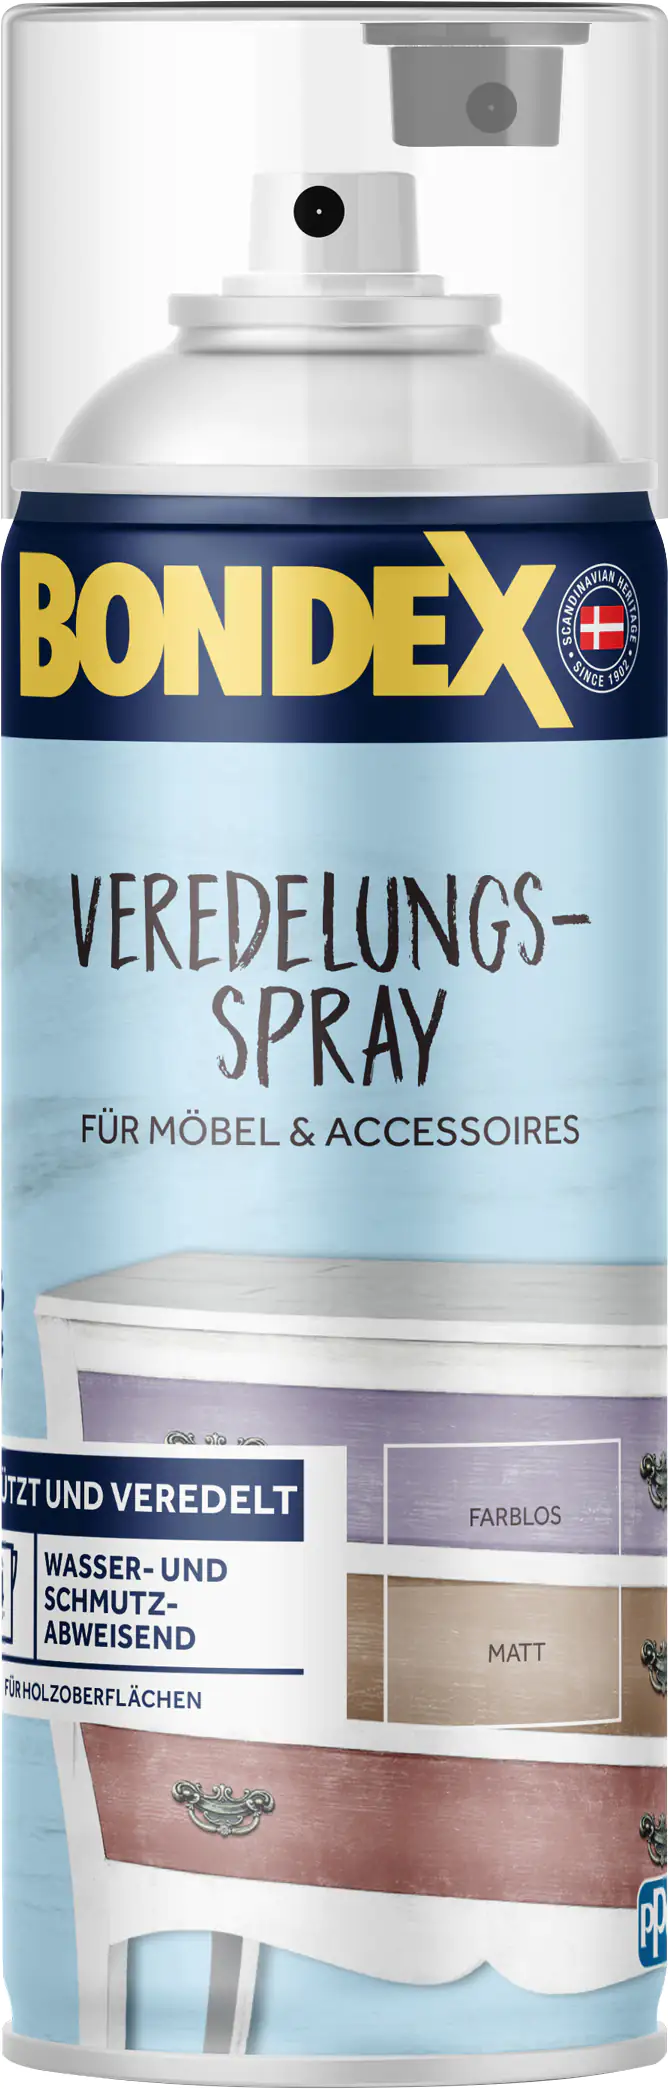 Bondex Veredelungs-Spray 400 ml farblos kaufen